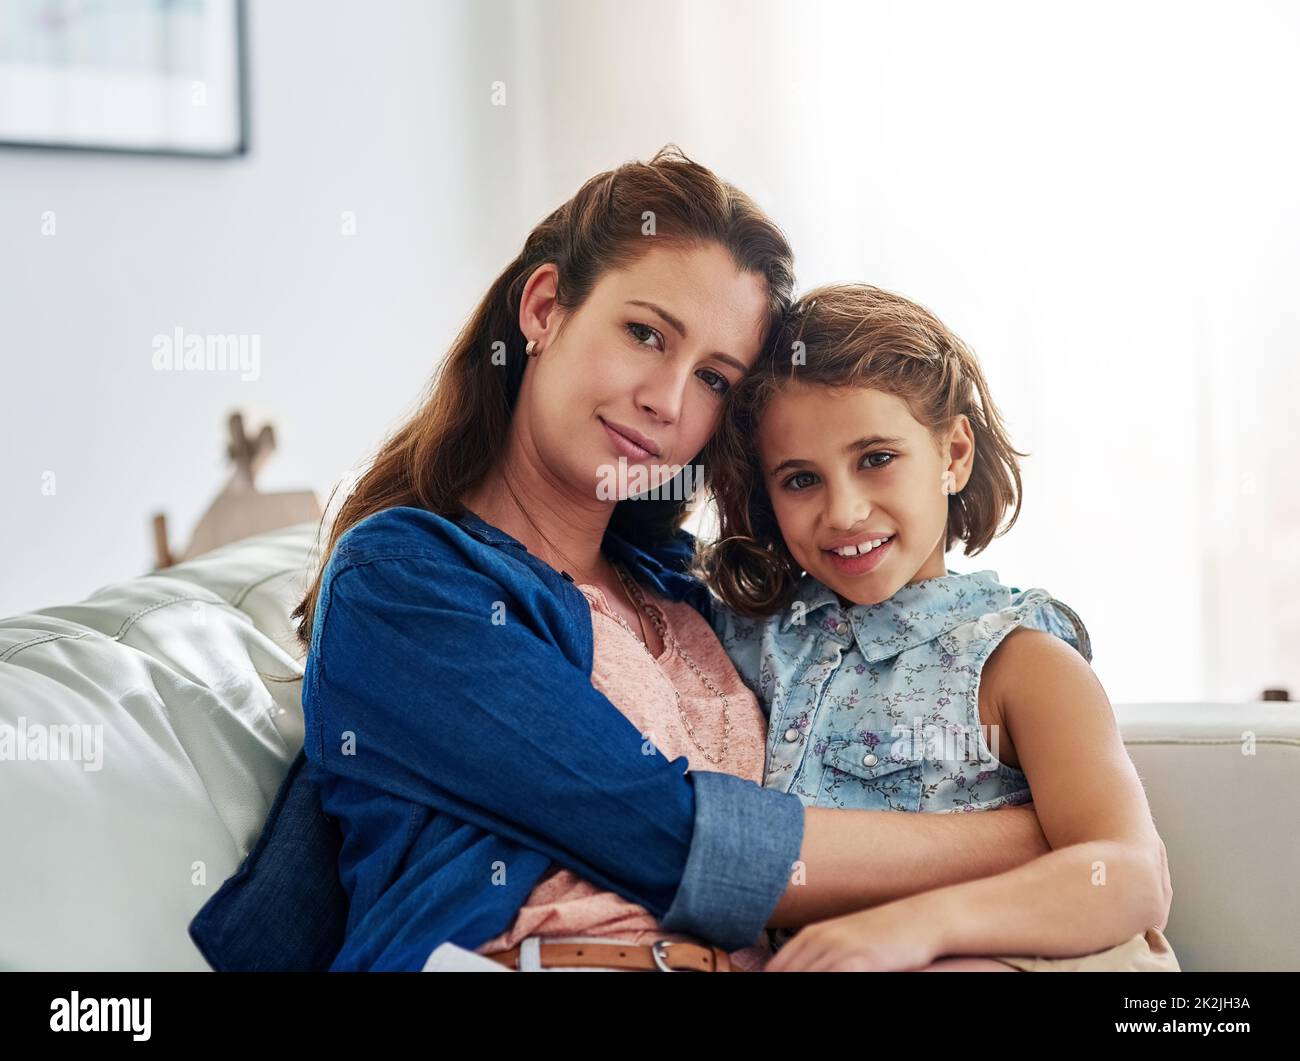 Die Familienzeit ist die wichtigste Zeit. Porträt einer Mutter und Tochter, die zu Hause einige Zeit miteinander verbringen. Stockfoto